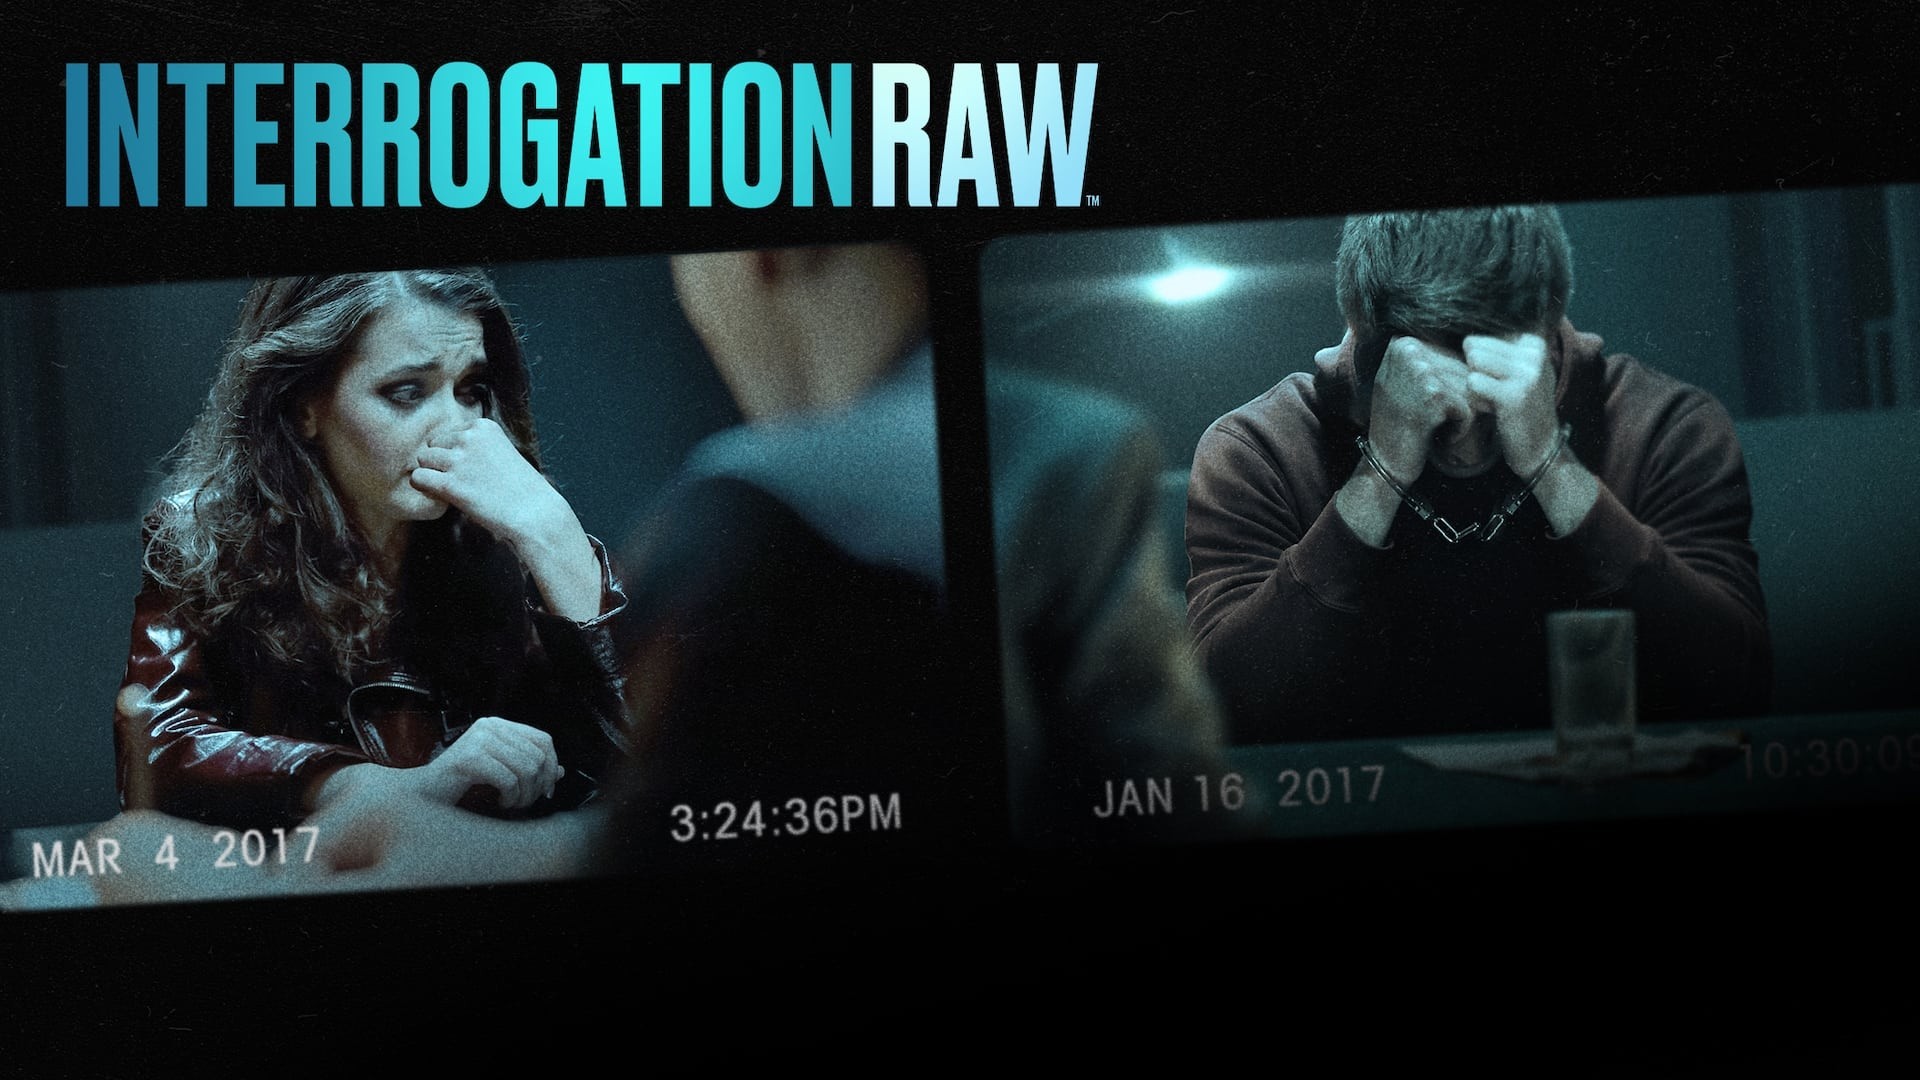 Interrogation Raw background